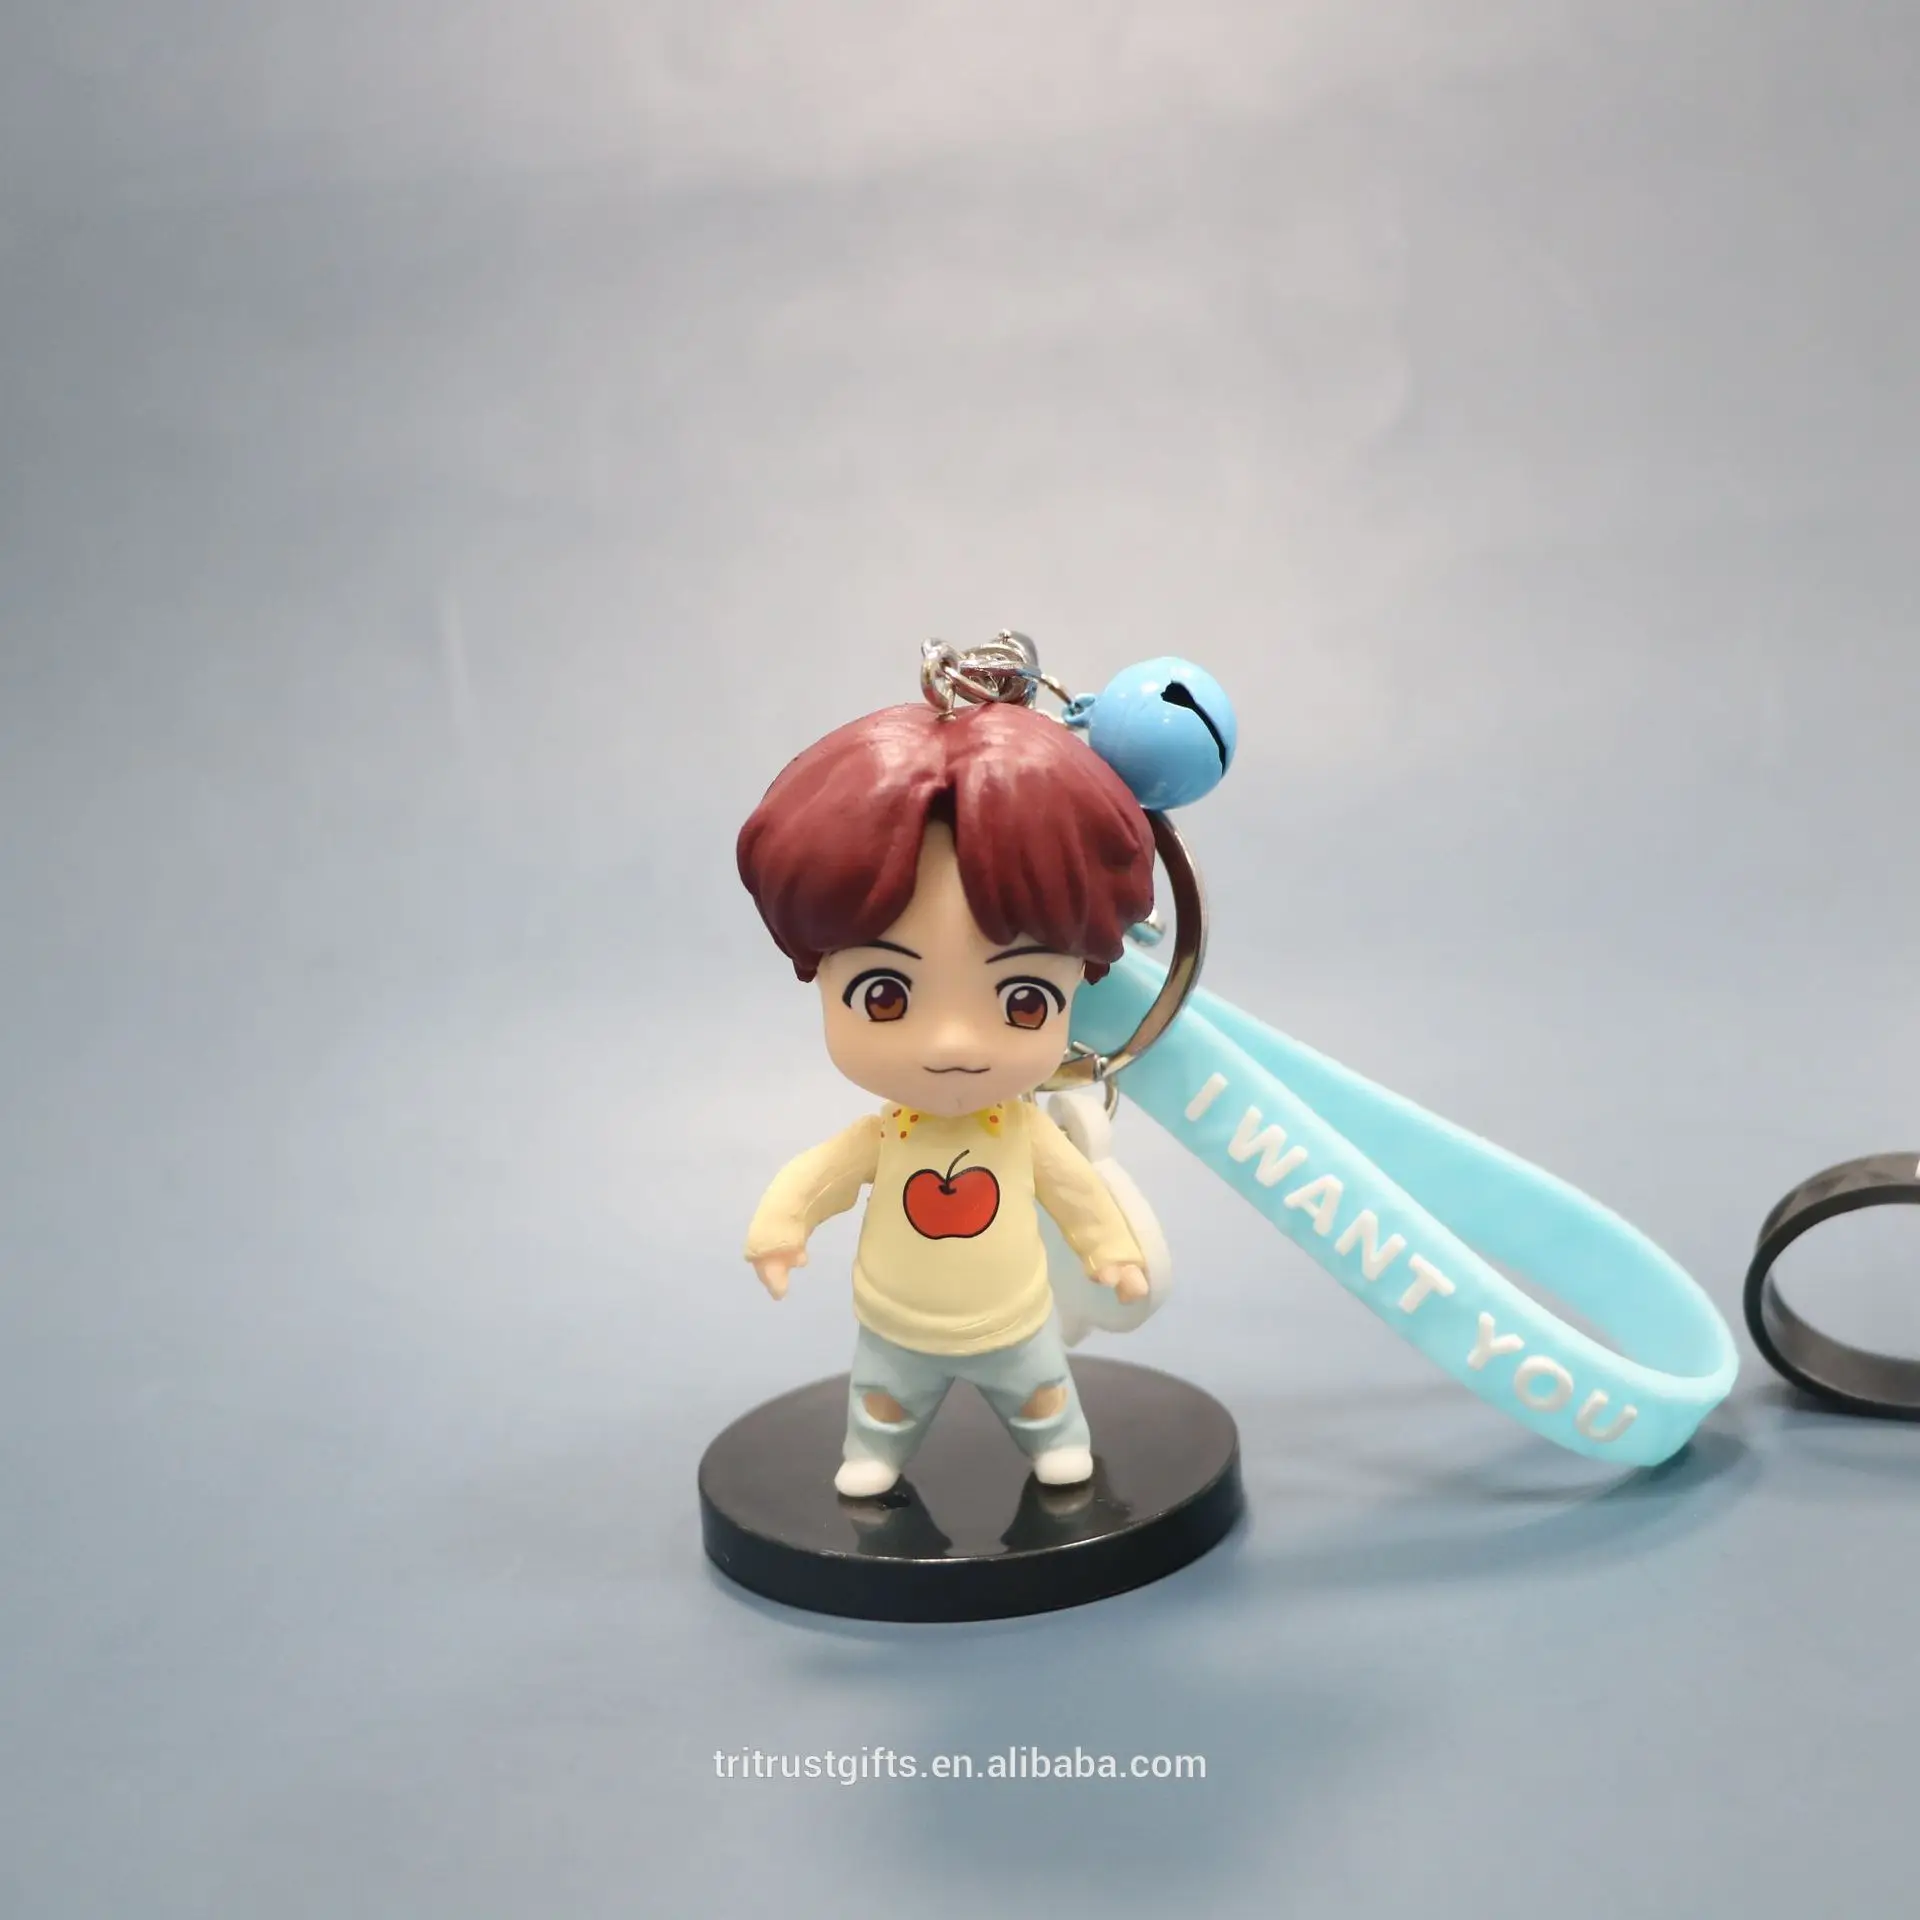 Korean Bangtan Boys Cartoon Keychain Personalized Cute Key Chain 3D PV –  String Division